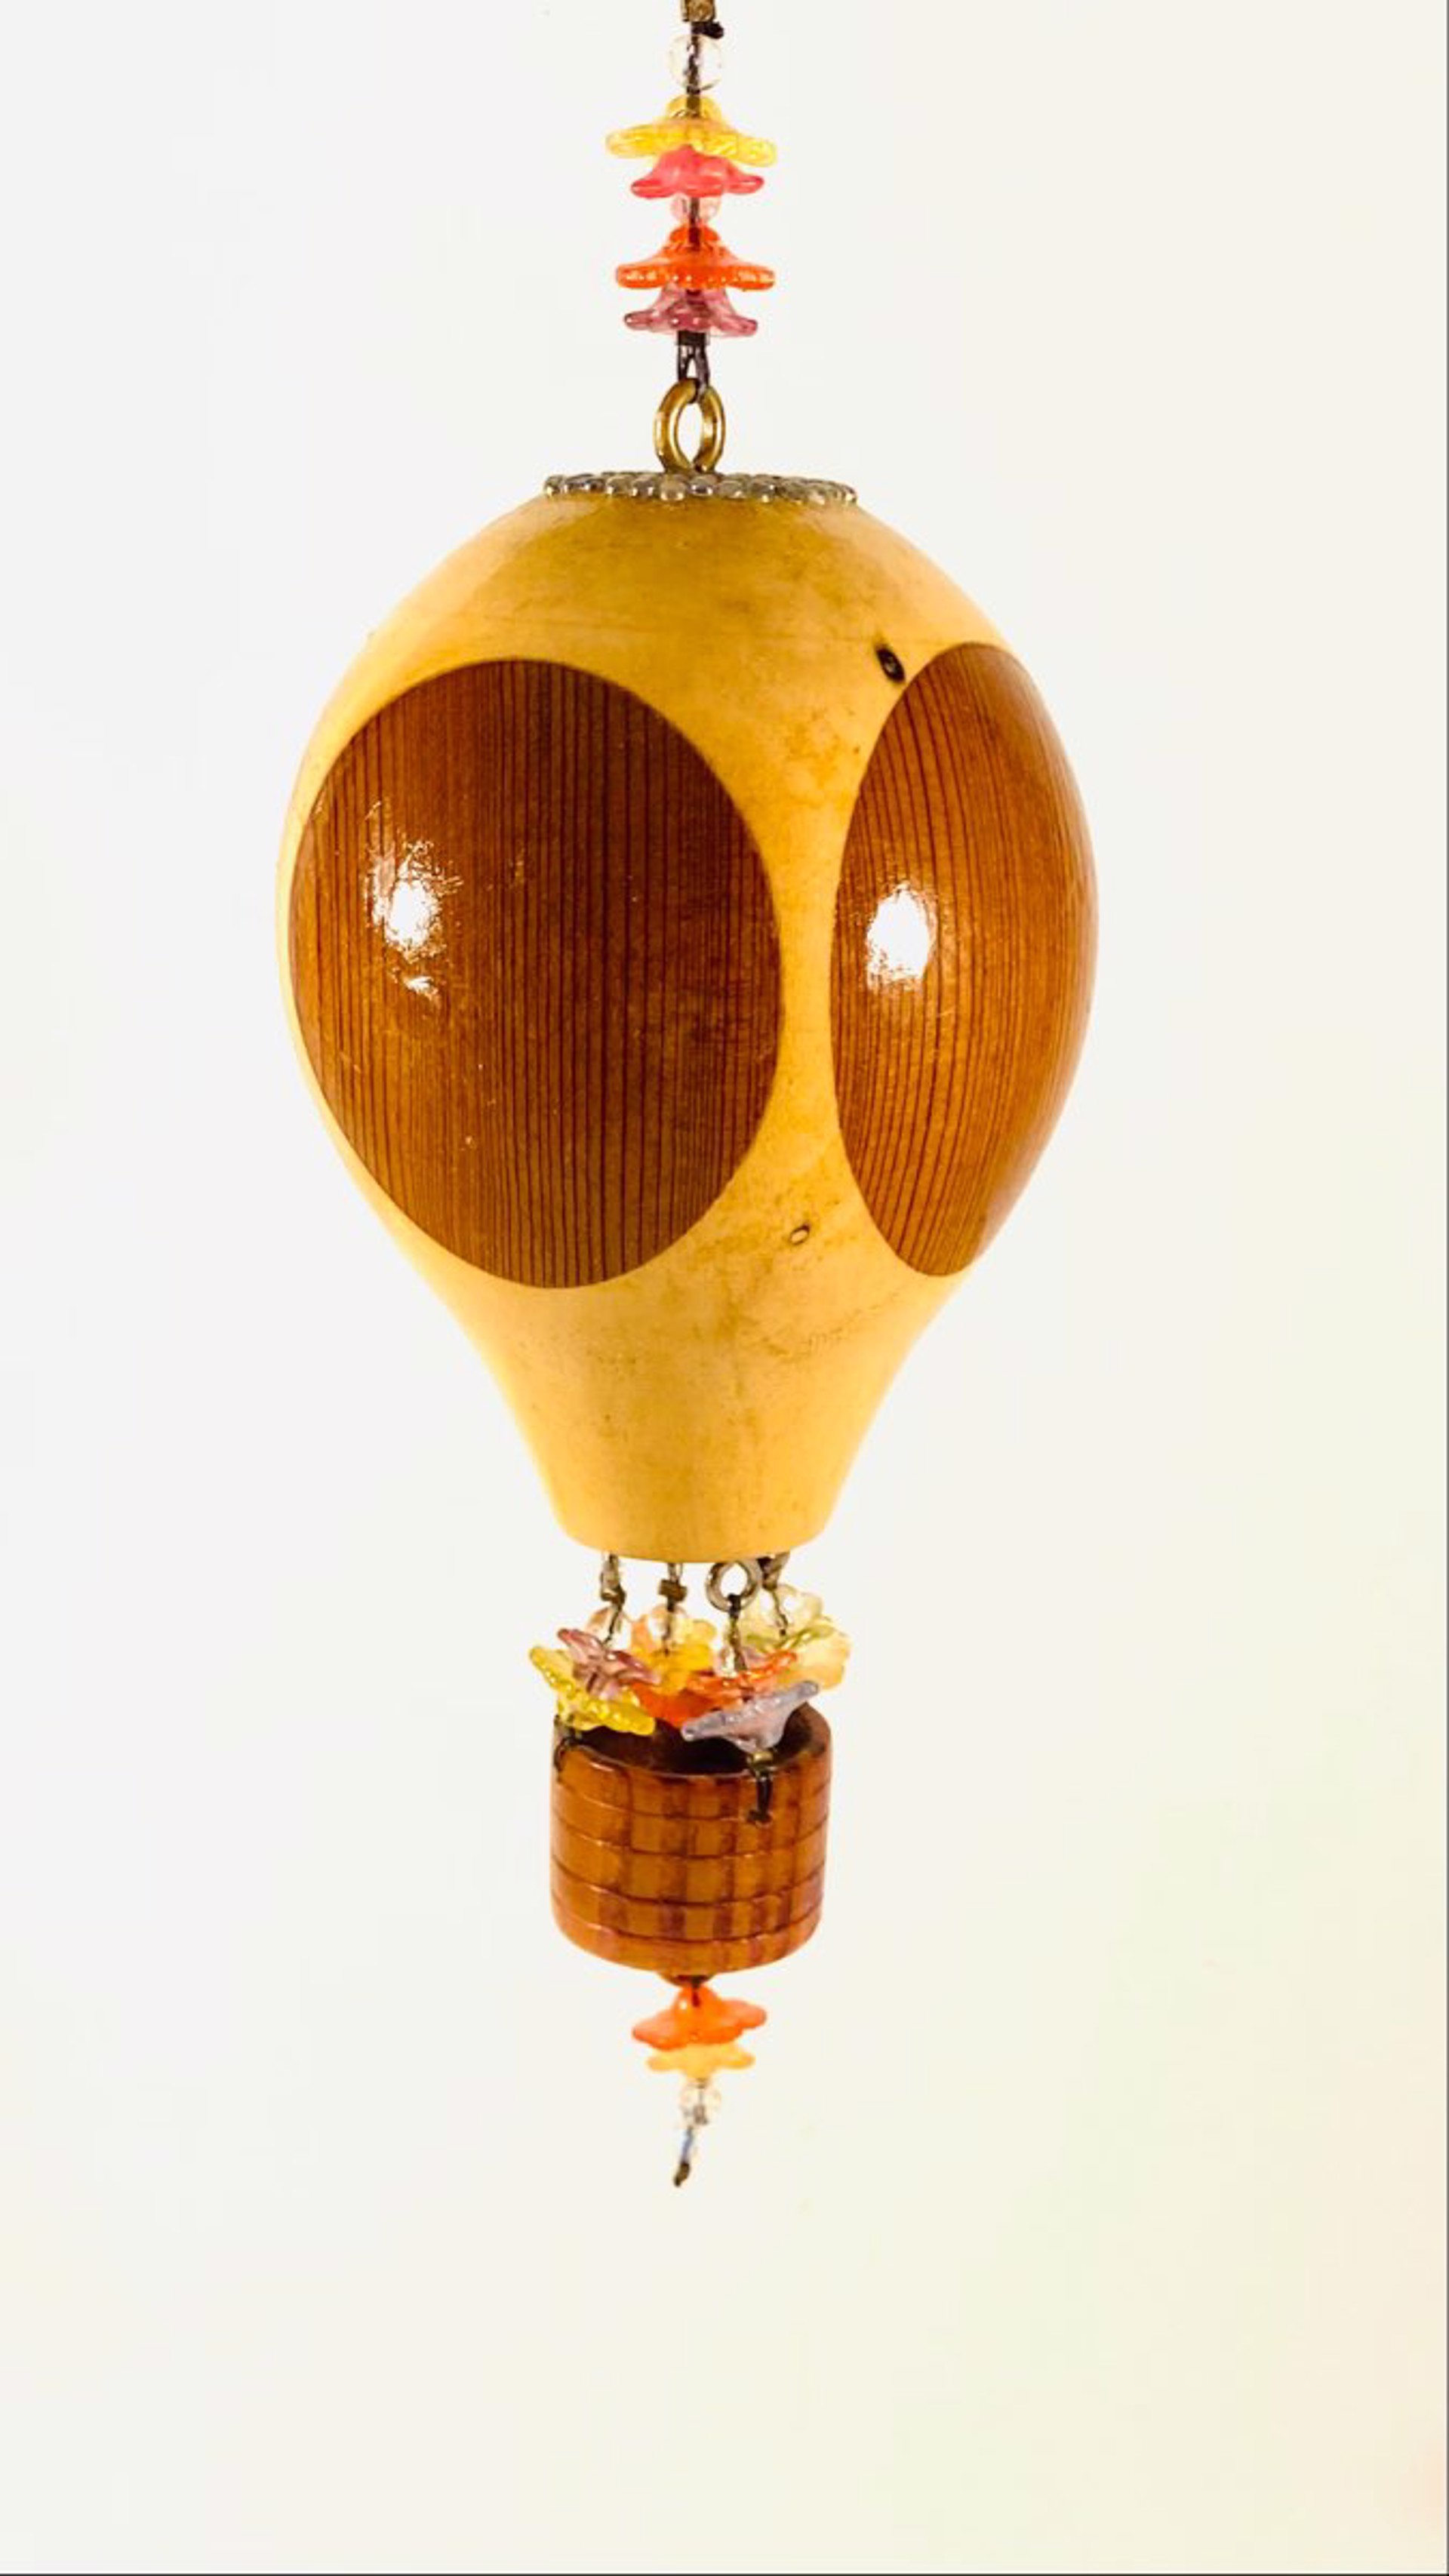 MT22-26 Whimsical Hot Air Balloon Ornament by Marc Tannenbaum